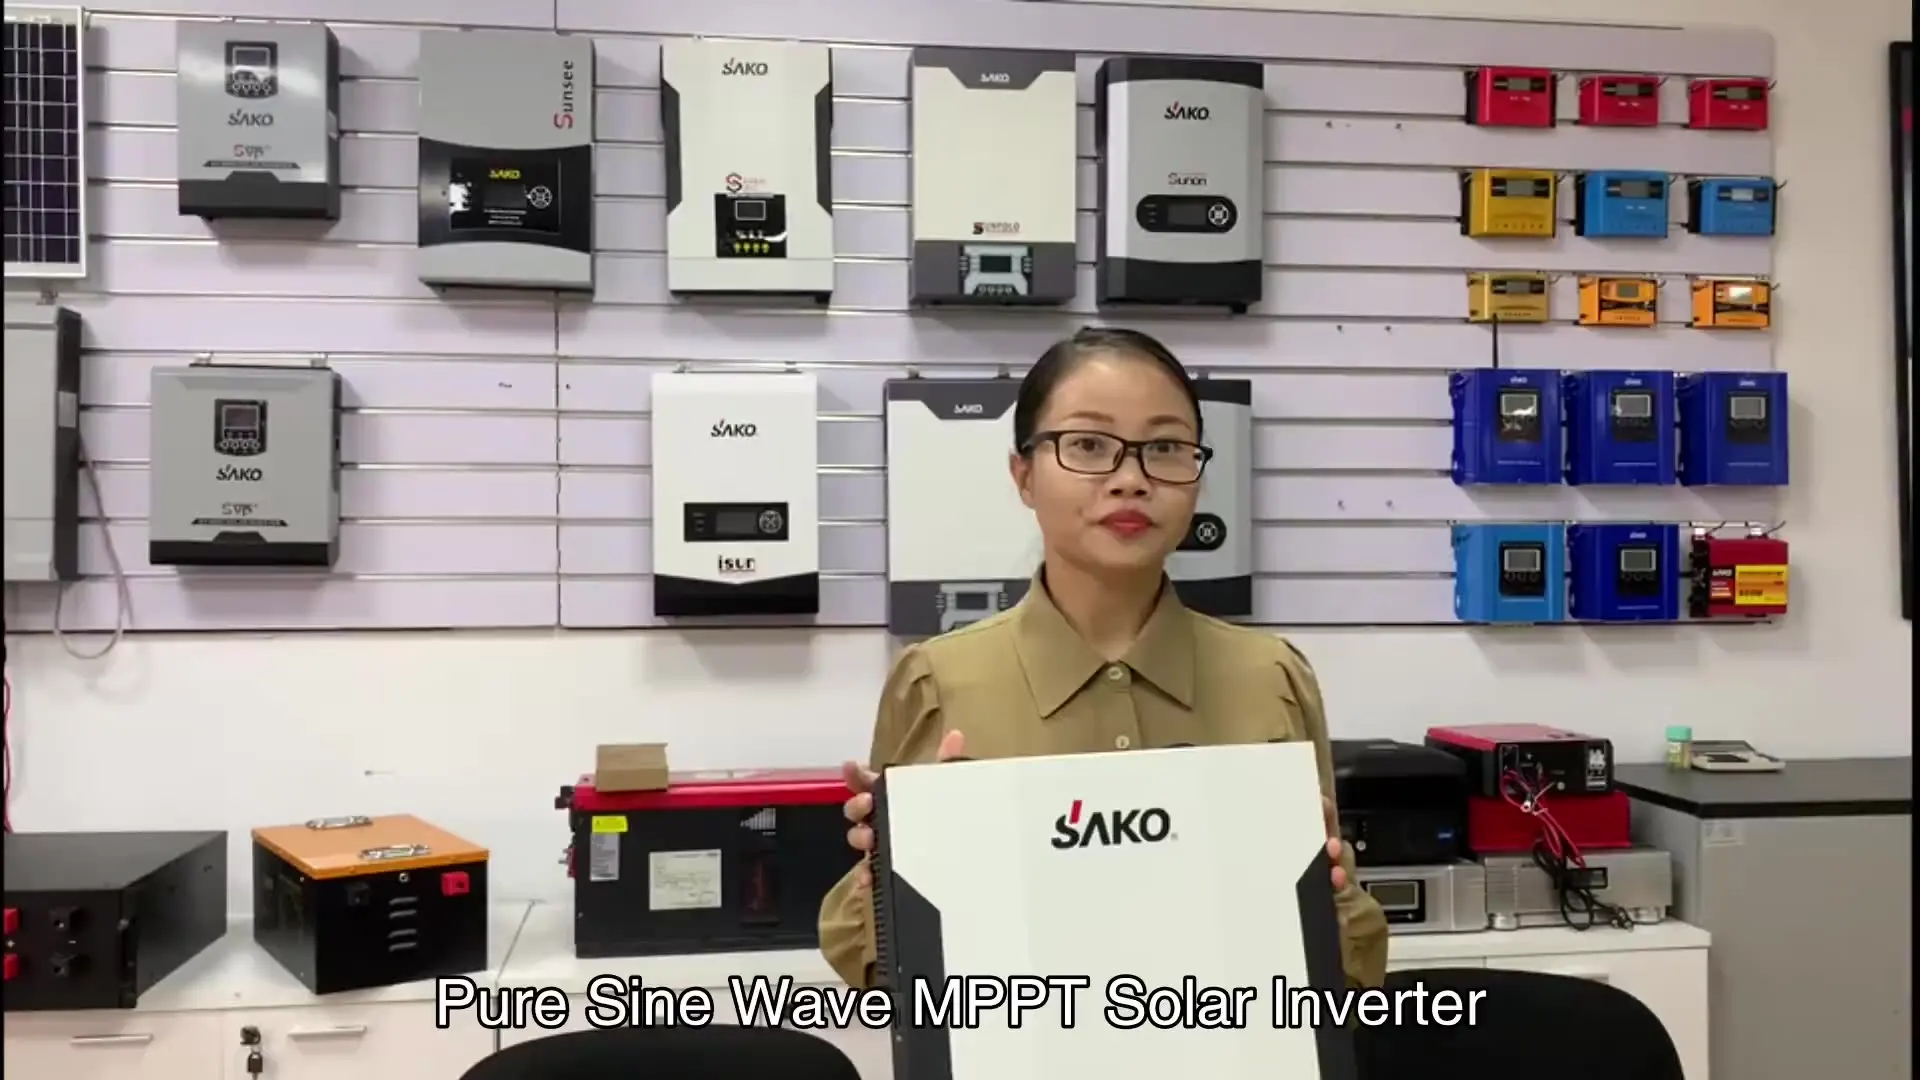 

Новейший NO.1 кВт 24 В SUNONPRO Гибридный автономный солнечный инвертор может работать без батареи опционально для Wi-Fi